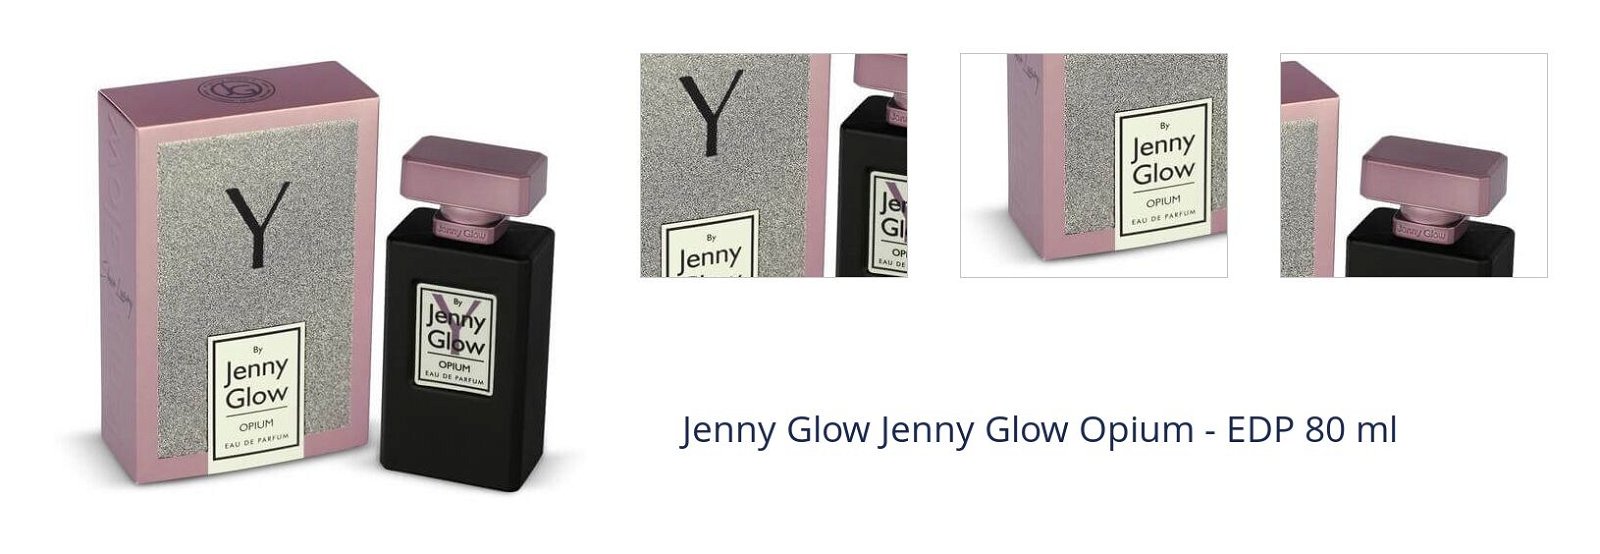 Jenny Glow Jenny Glow Opium - EDP 80 ml 1